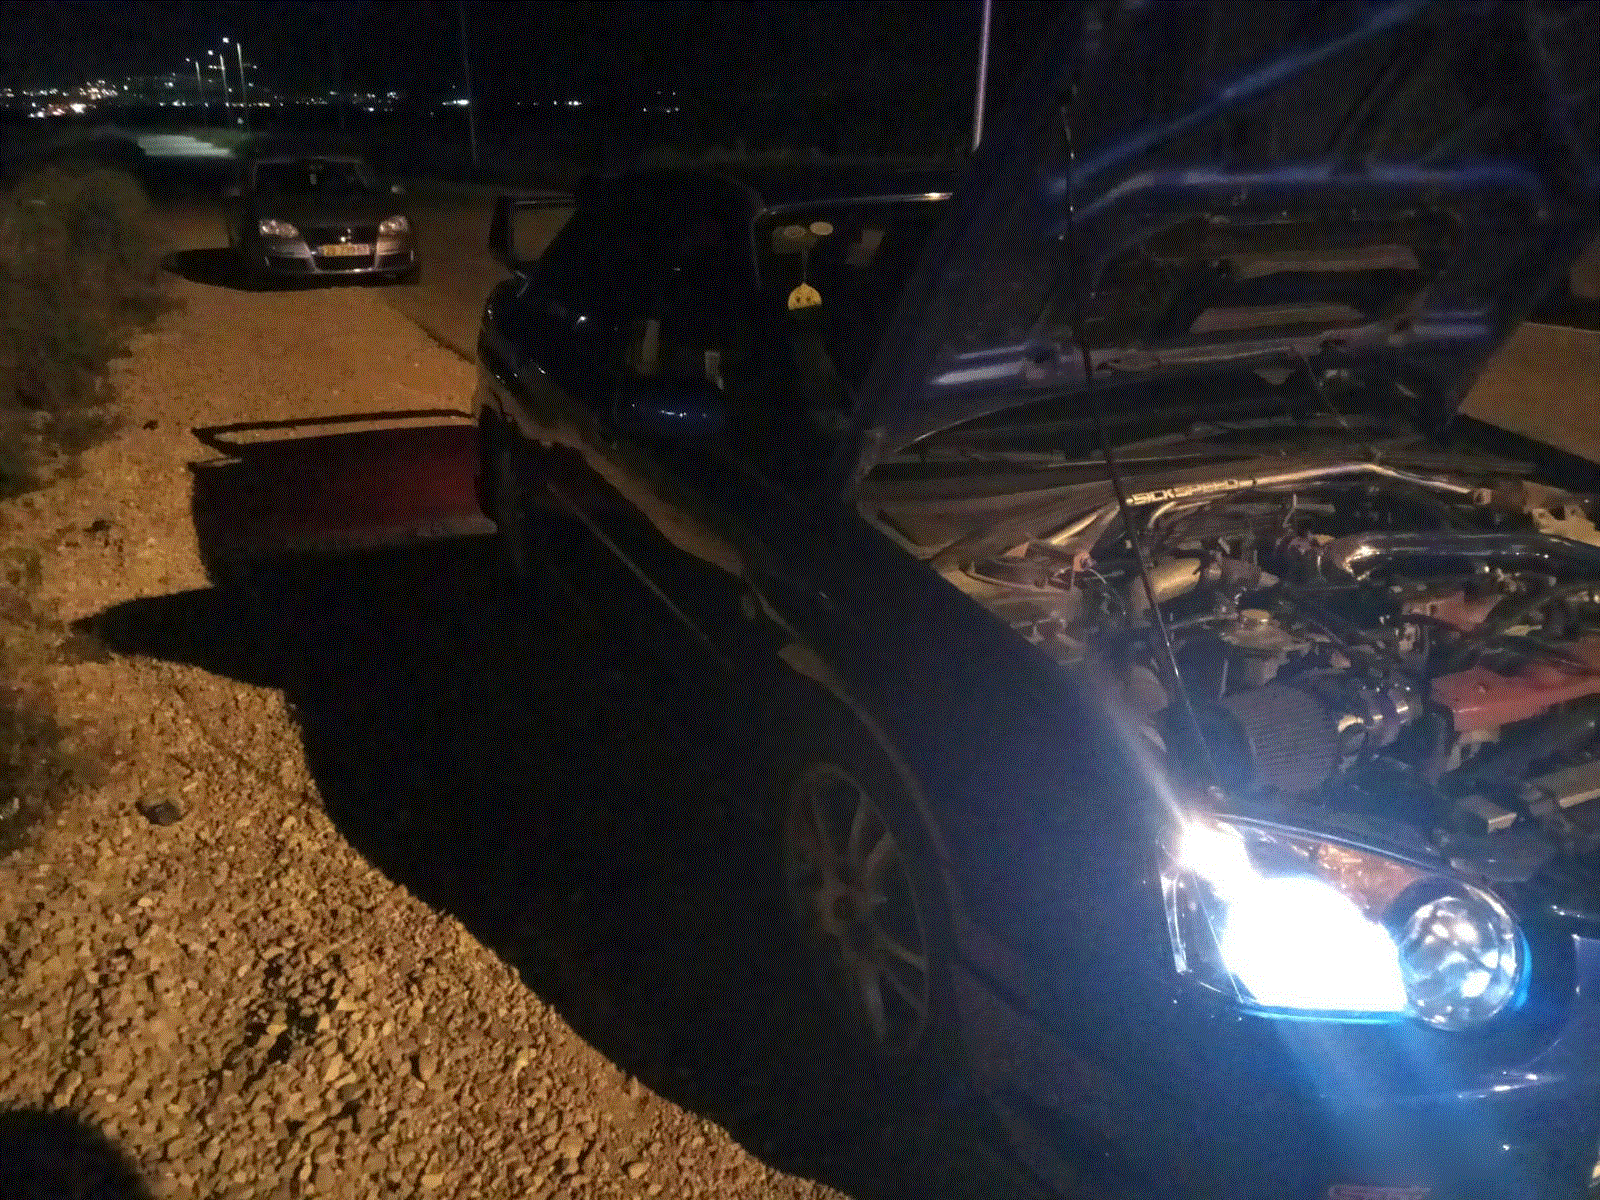   Полиция пресекла проведение нелегальных автогонок в районе Мегиддо